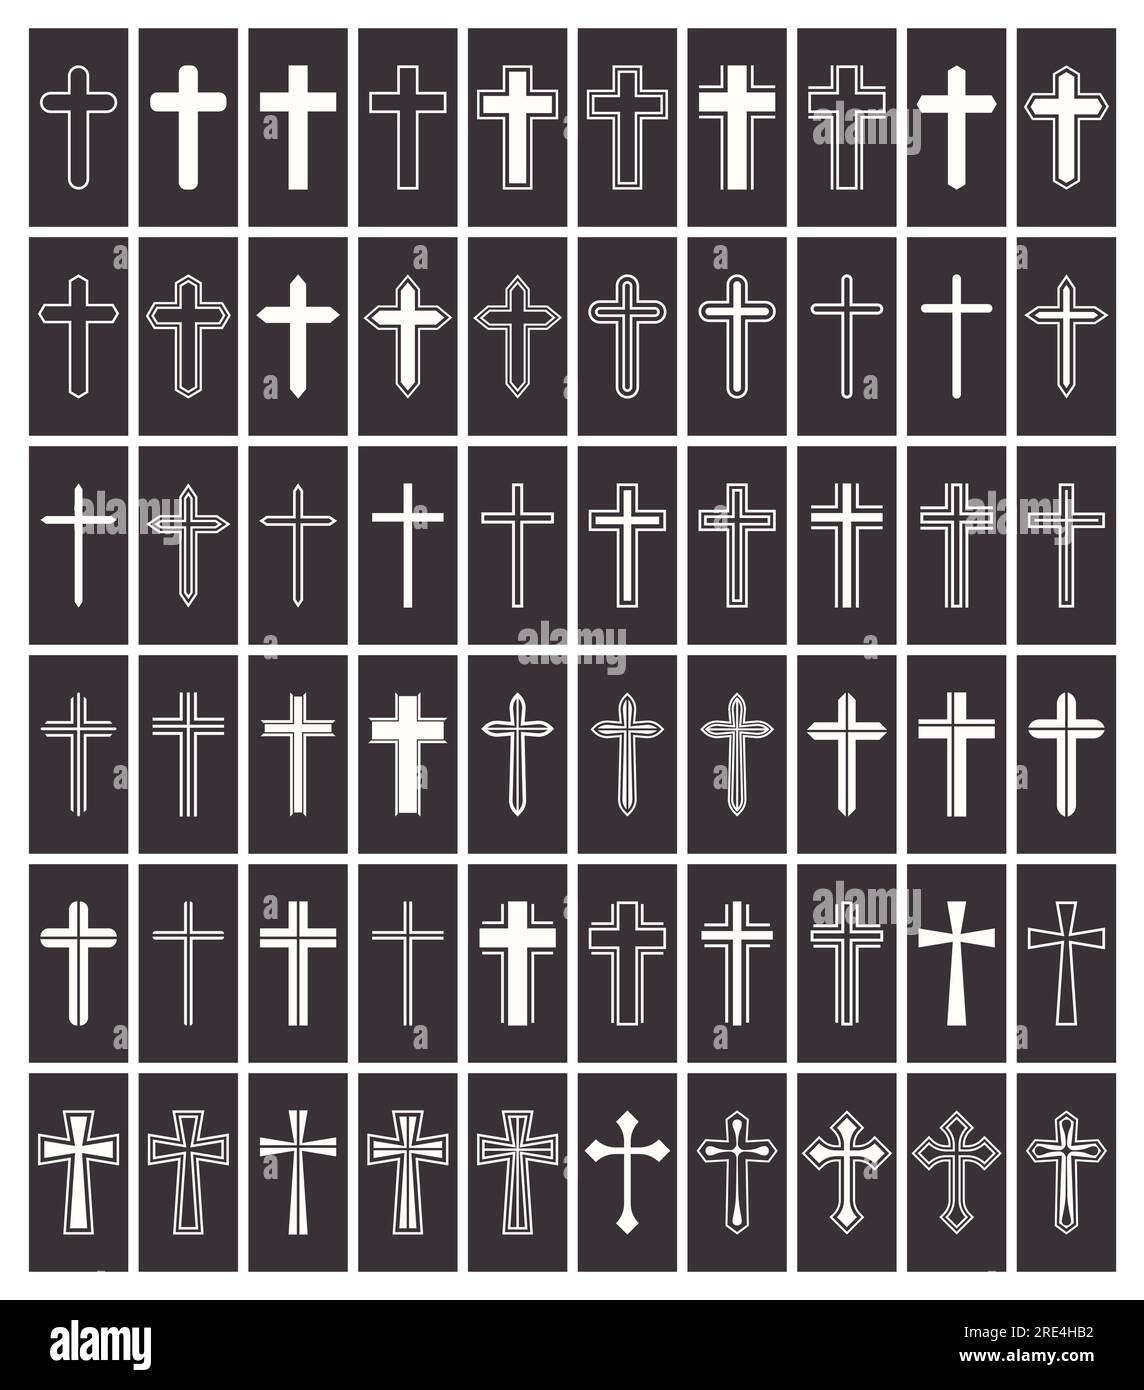 Icone Flat Vector Black and White Christian Cross. Linea silhouette ritagliata Black Christian Crosses Collection Isolated. Illustrazione Vettoriale